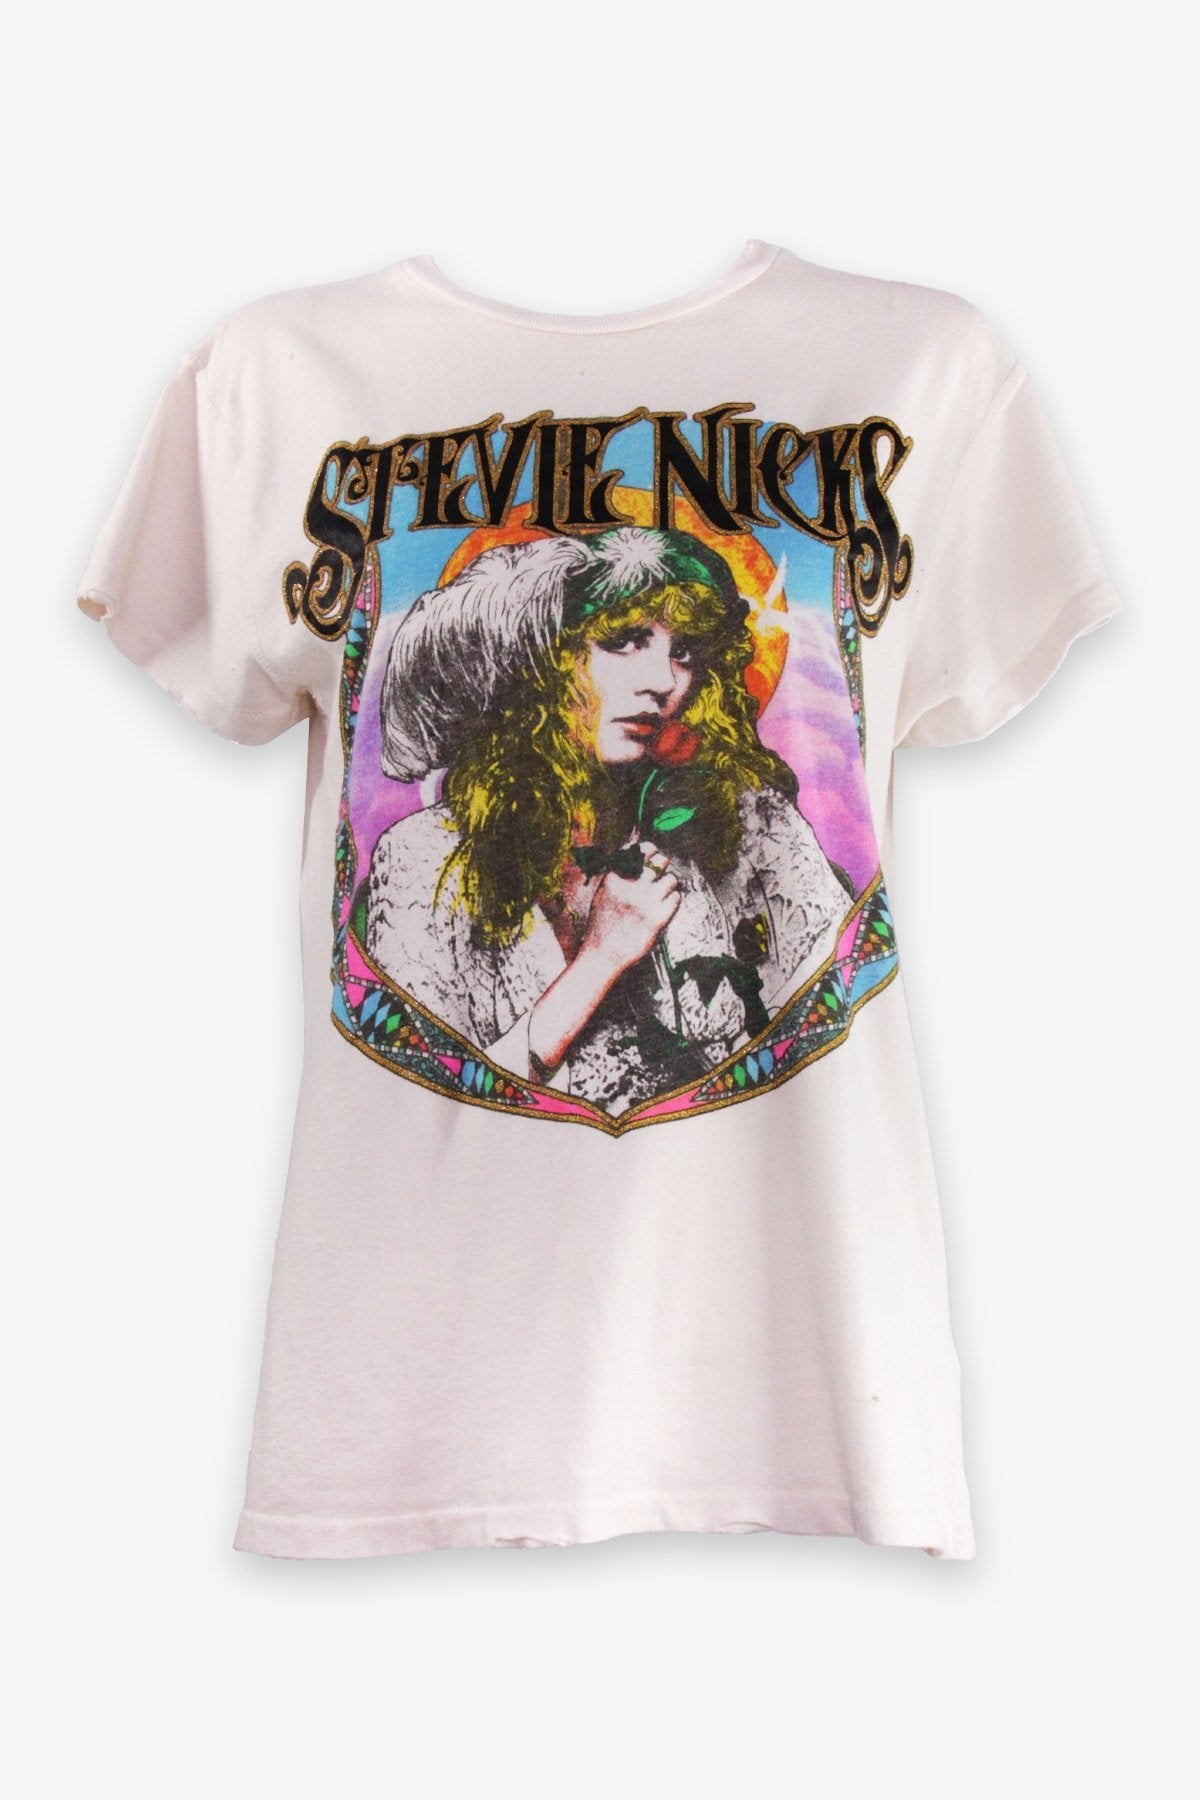 Stevie Nicks Unisex T-Shirt in White - shop-olivia.com